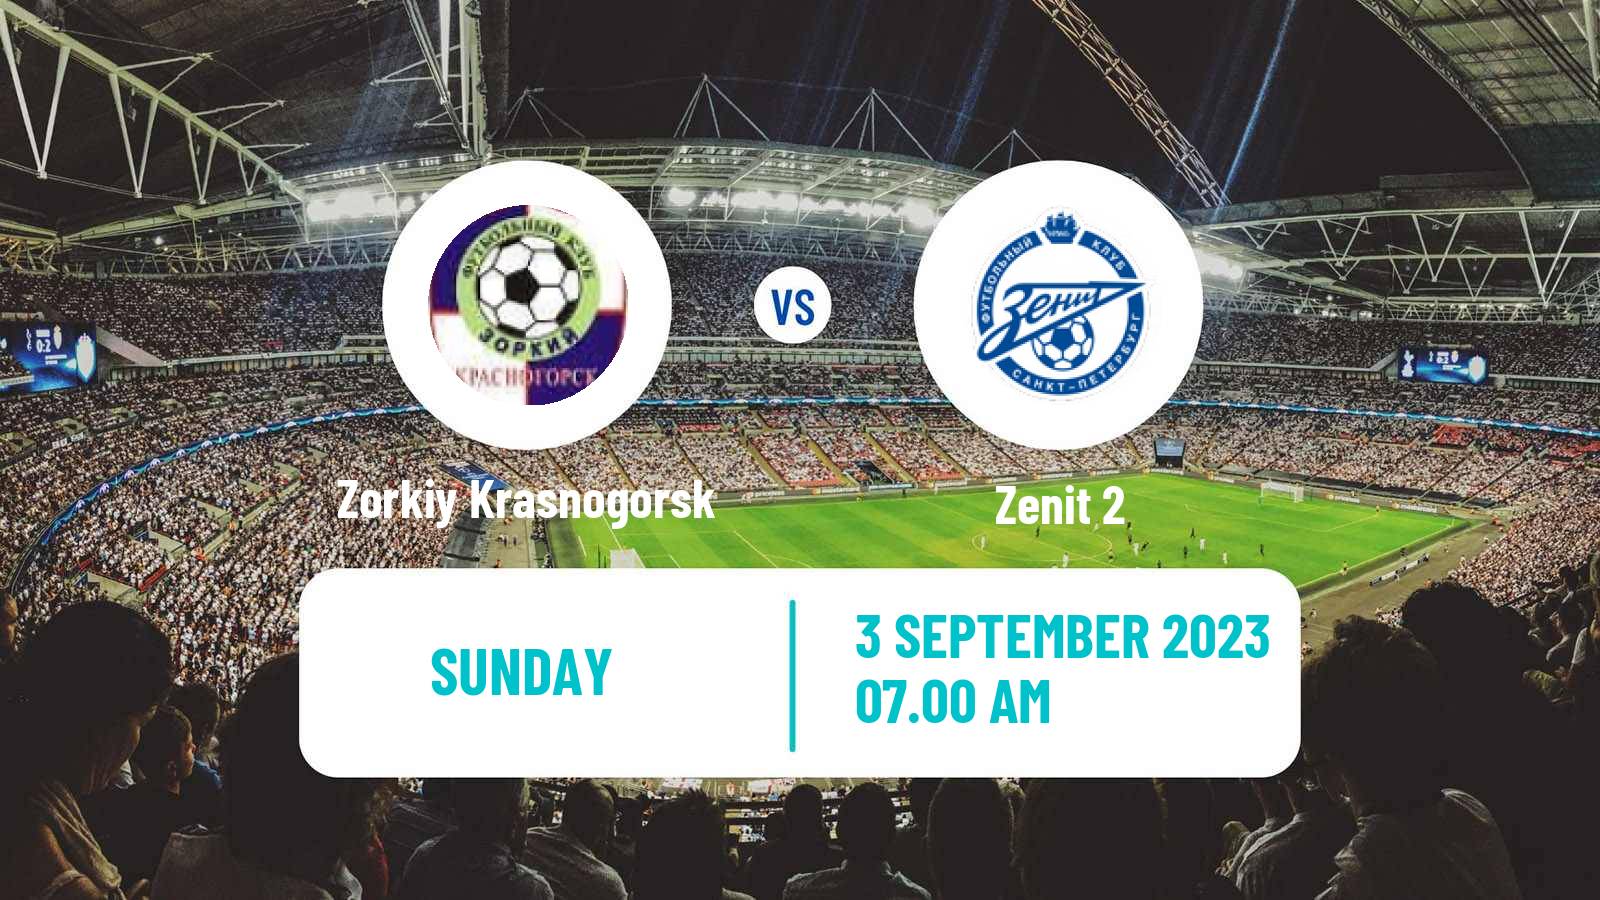 Soccer FNL 2 Division B Group 2 Zorkiy Krasnogorsk - Zenit 2